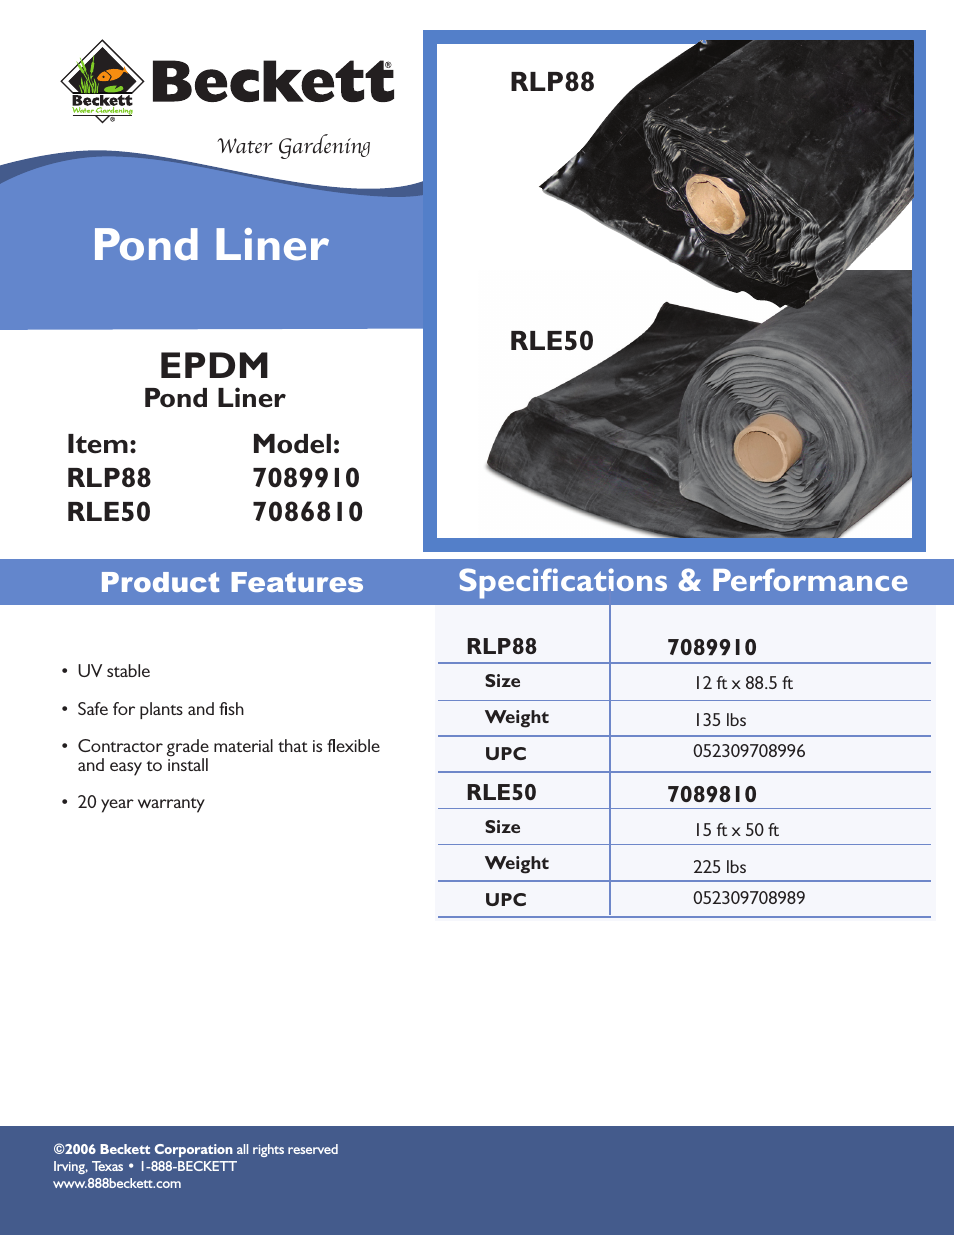 EPDM Pond Liner 7086810